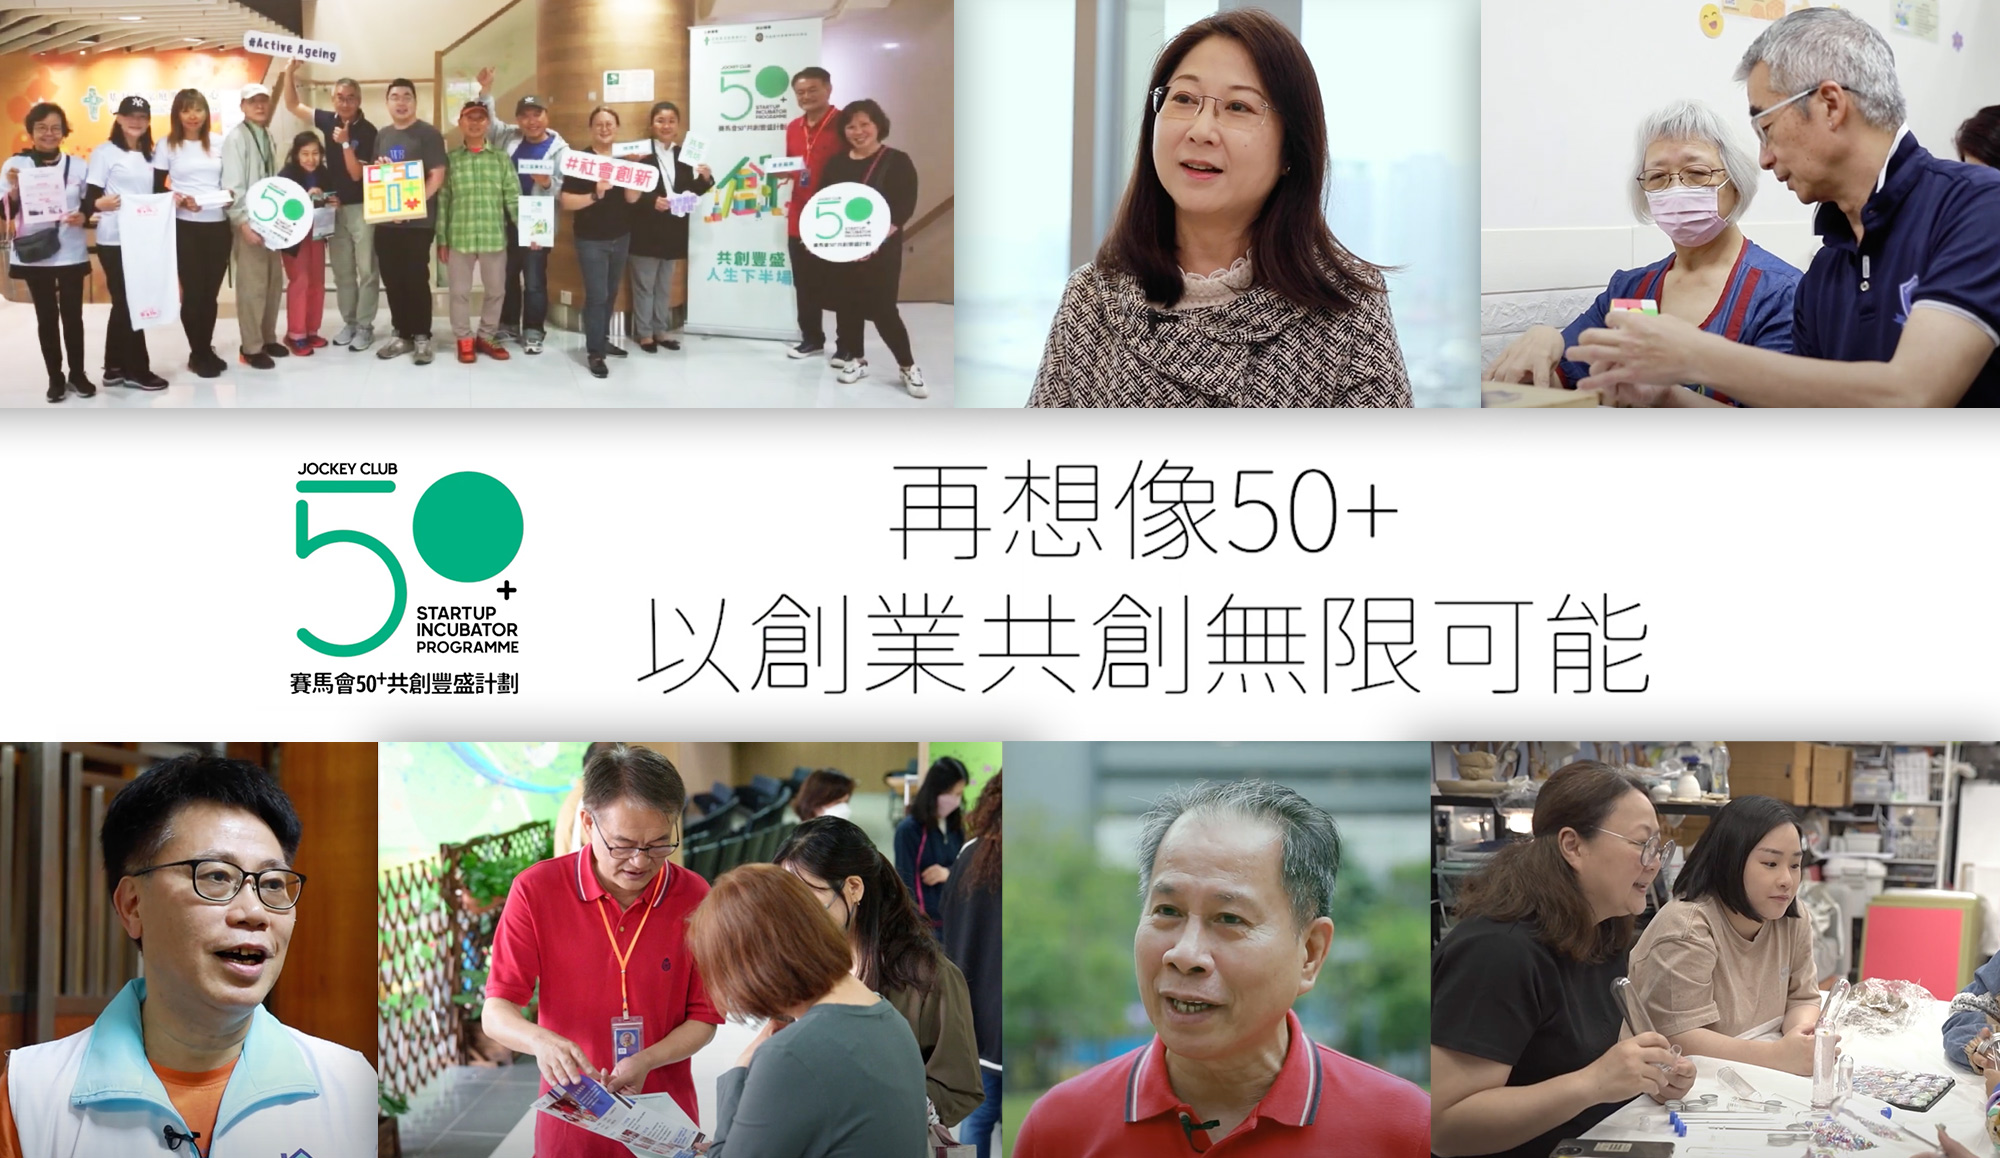 「50+共創豐盛計劃」   由50+創業者分享   印證「人生便充滿可能」